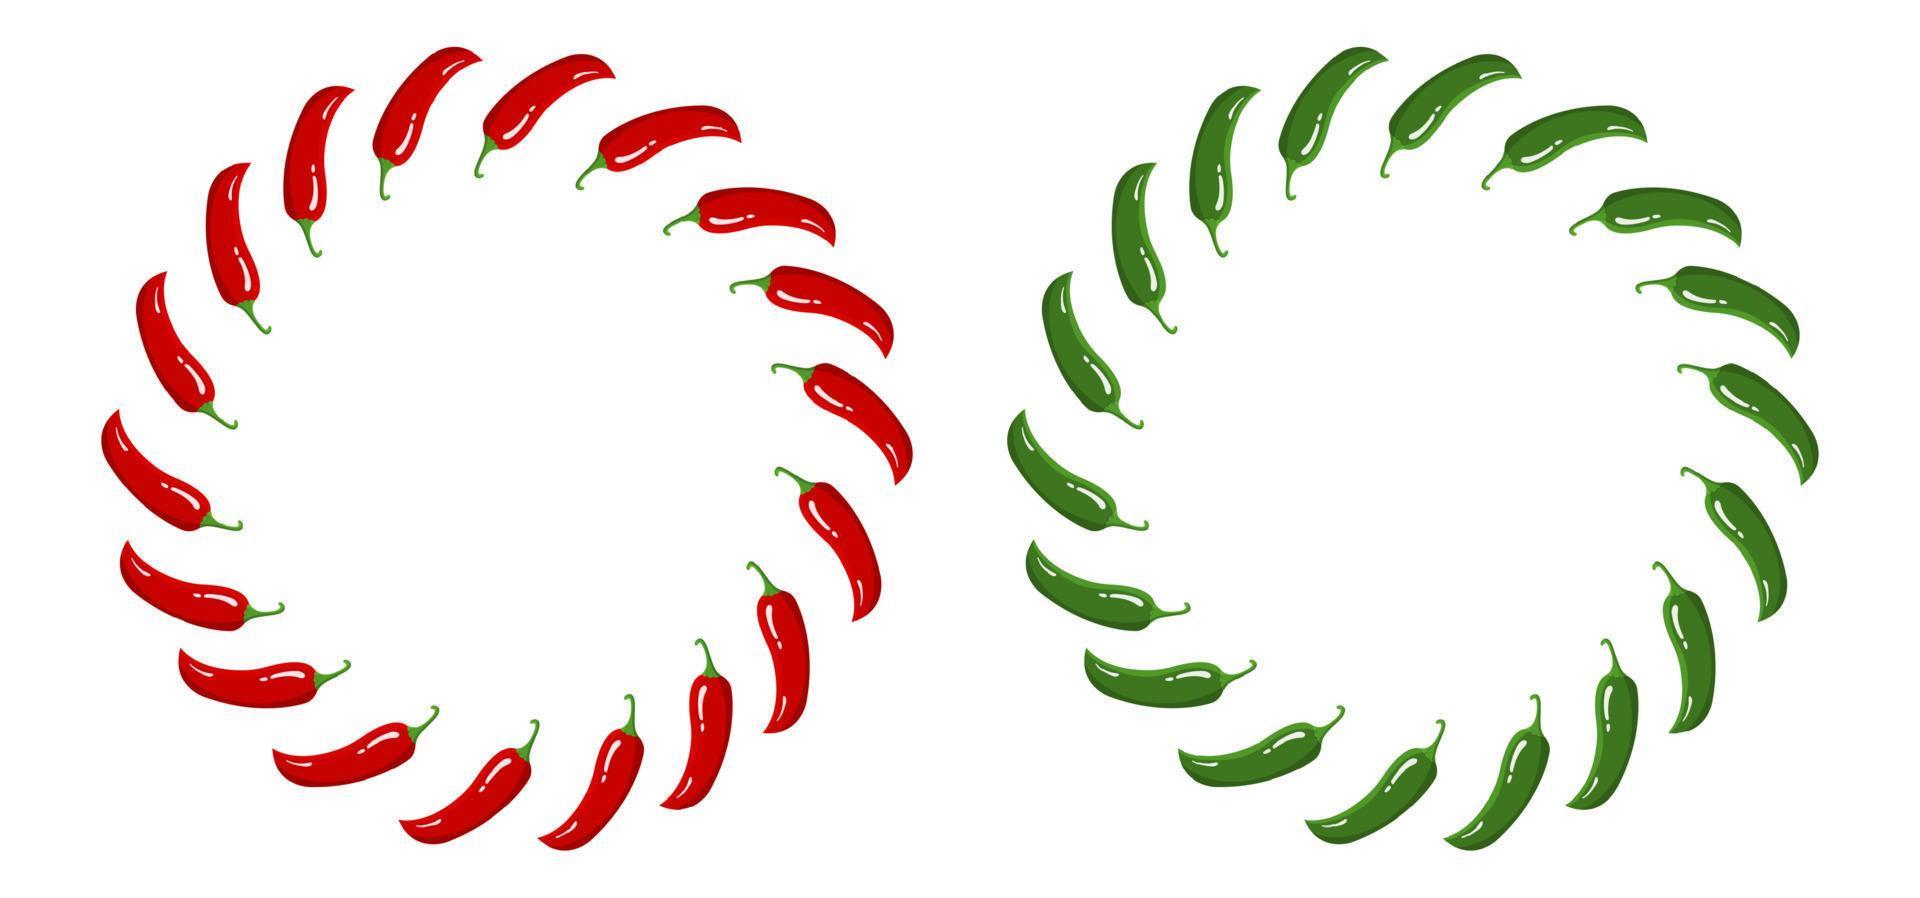 couronne de piment rouge et vert. légumes frais isolés sur fond blanc. cadre circulaire de poivre pour le marché, conception de recettes. style plat de dessin animé. illustration vectorielle pour votre conception, web. vecteur